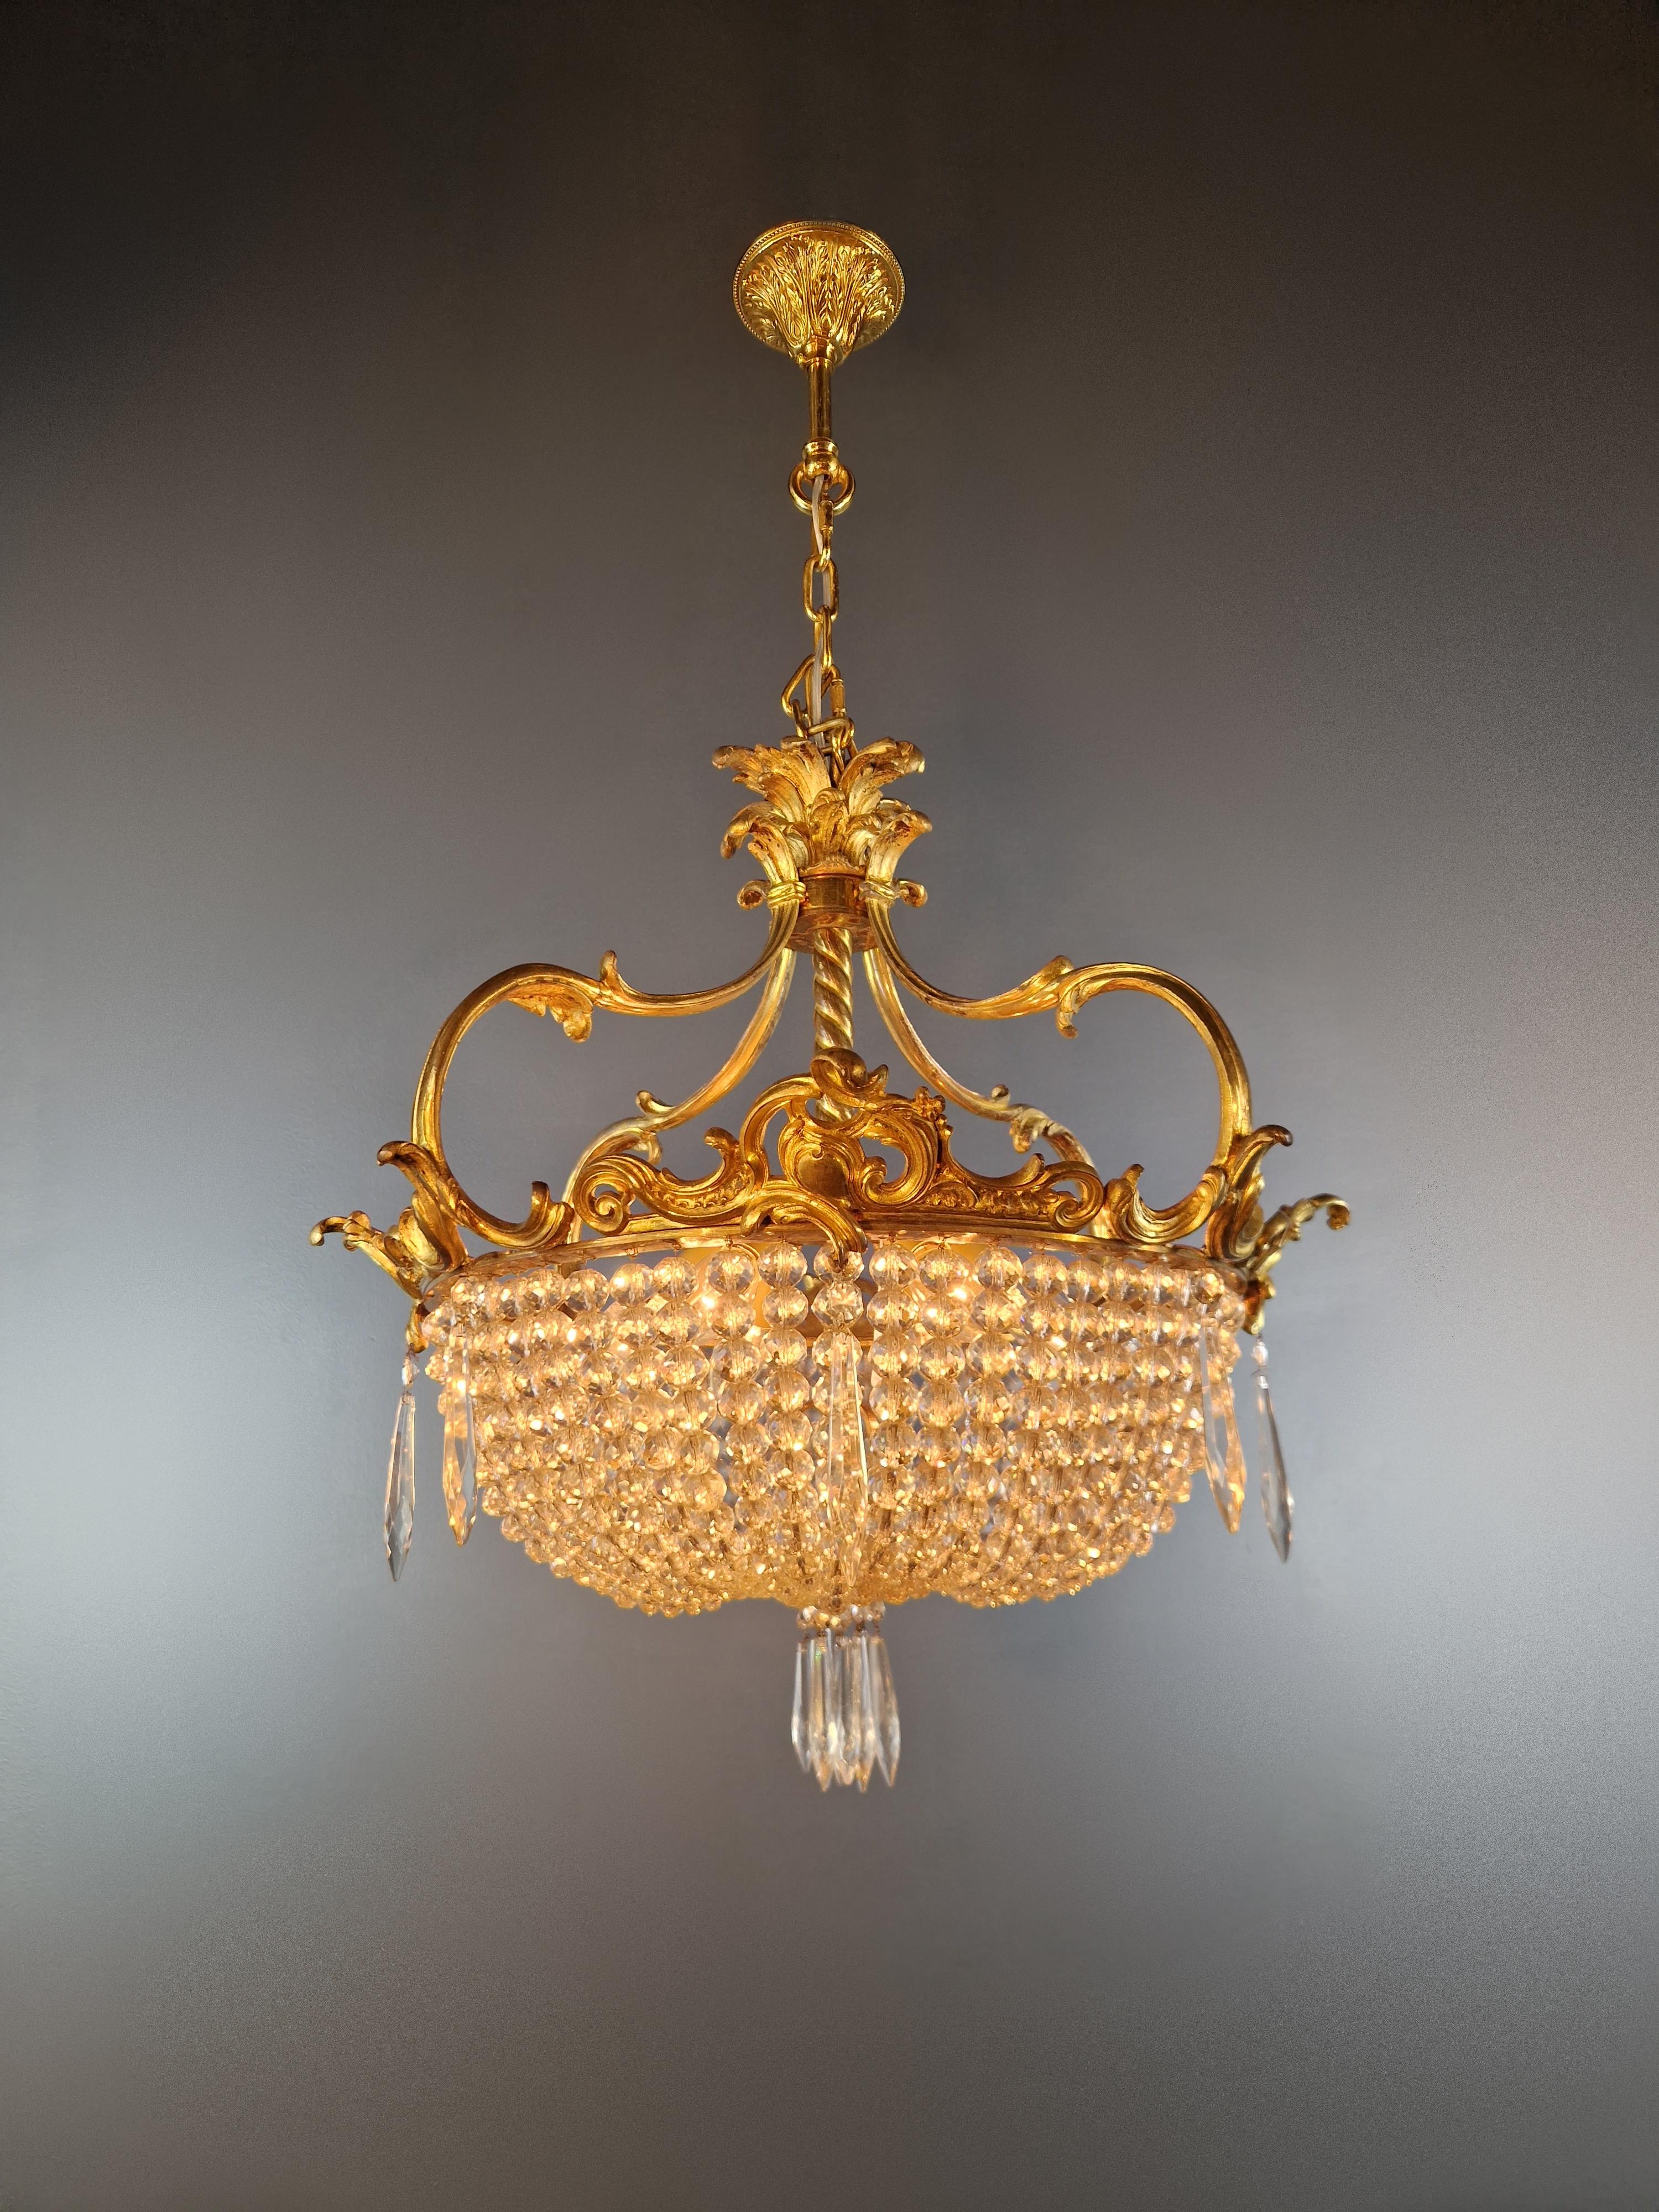 Hand-Knotted Art Nouveau Brass Chandelier Lustre Ceiling Lamp Rarity Antique